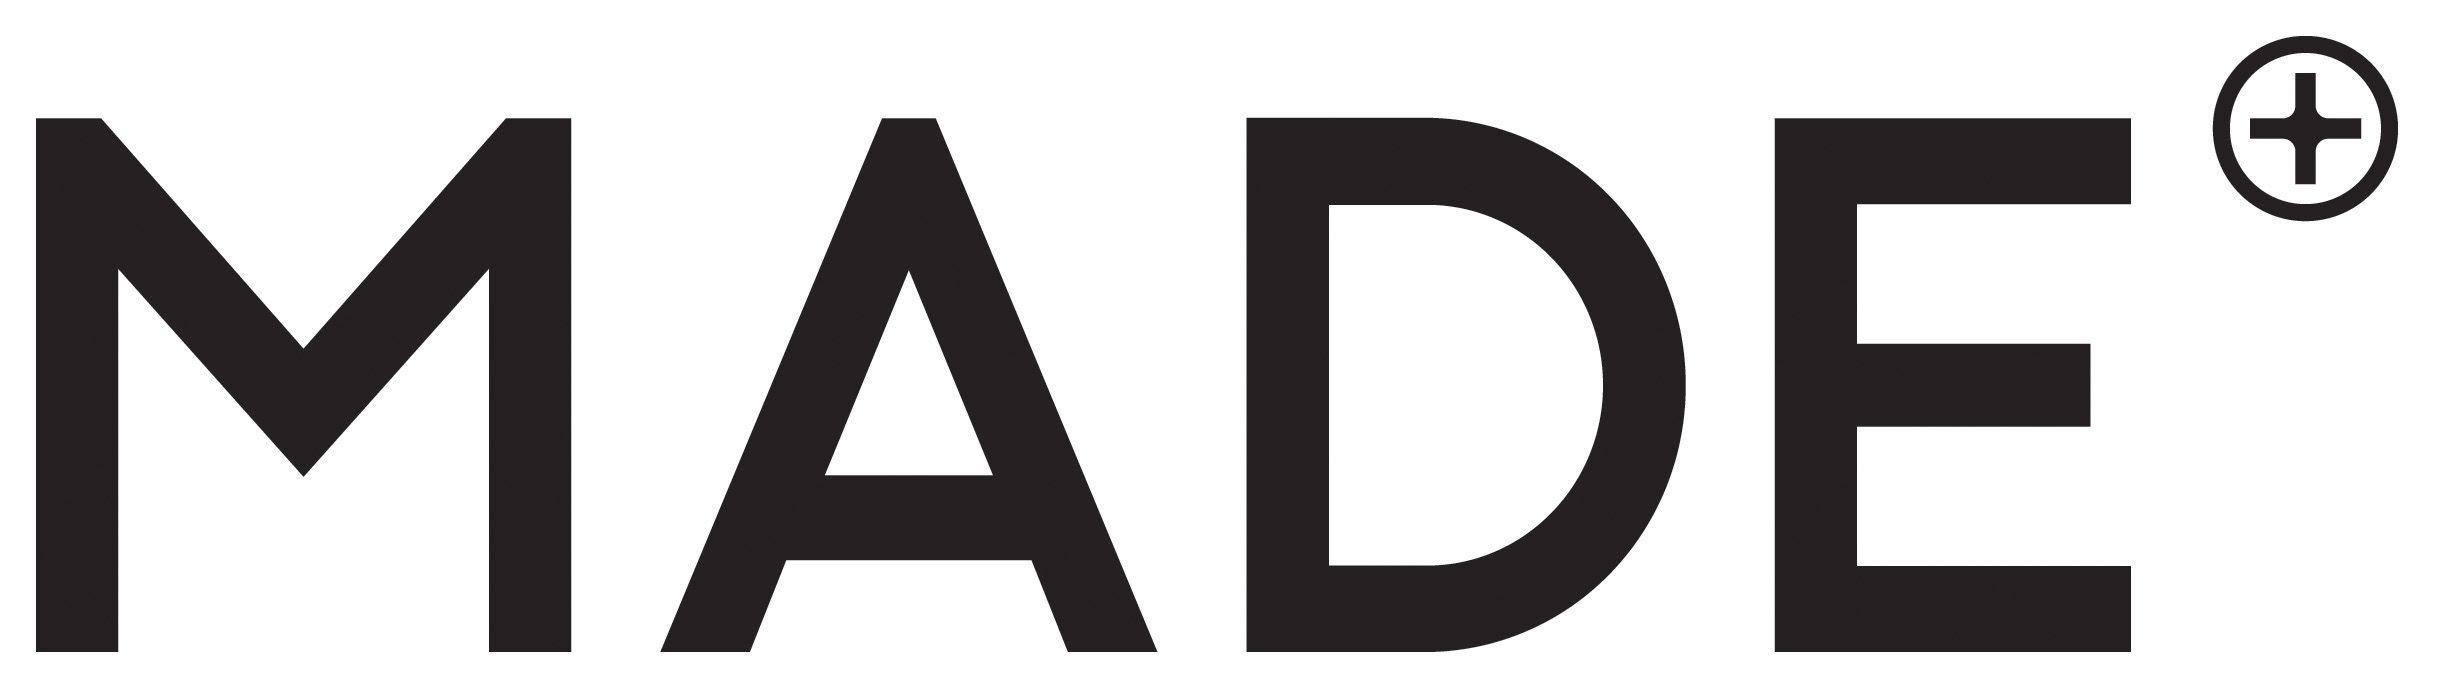 Made.com Logo - Made.com: The MADE.COM interior design service